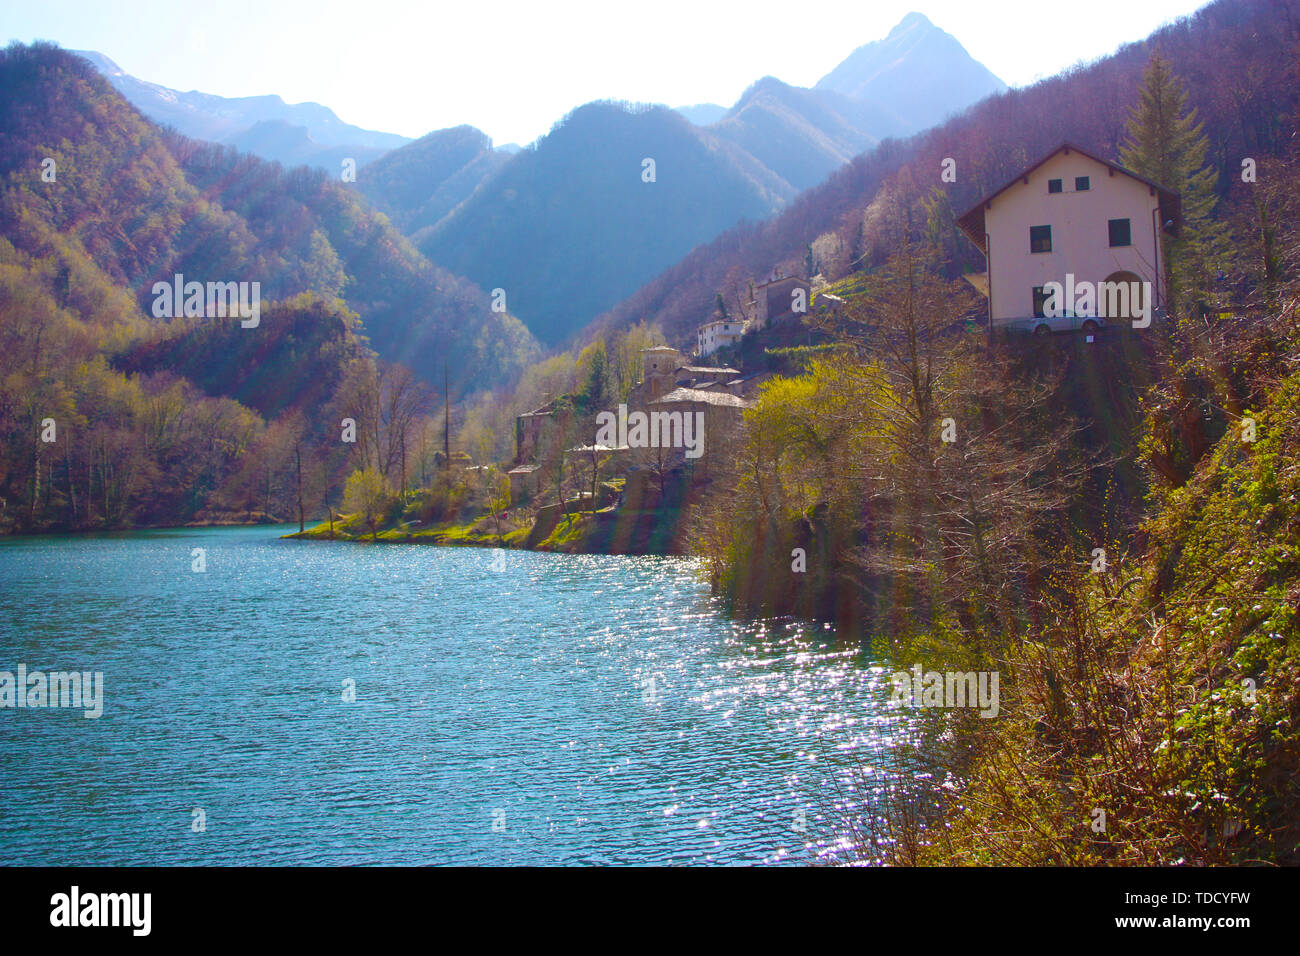 Il romantico lago di Isola Santa in Toscana, nelle montagne delle Alpi Apuane. panorama al di fuori della messa a fuoco con un po' di nebbia Foto Stock